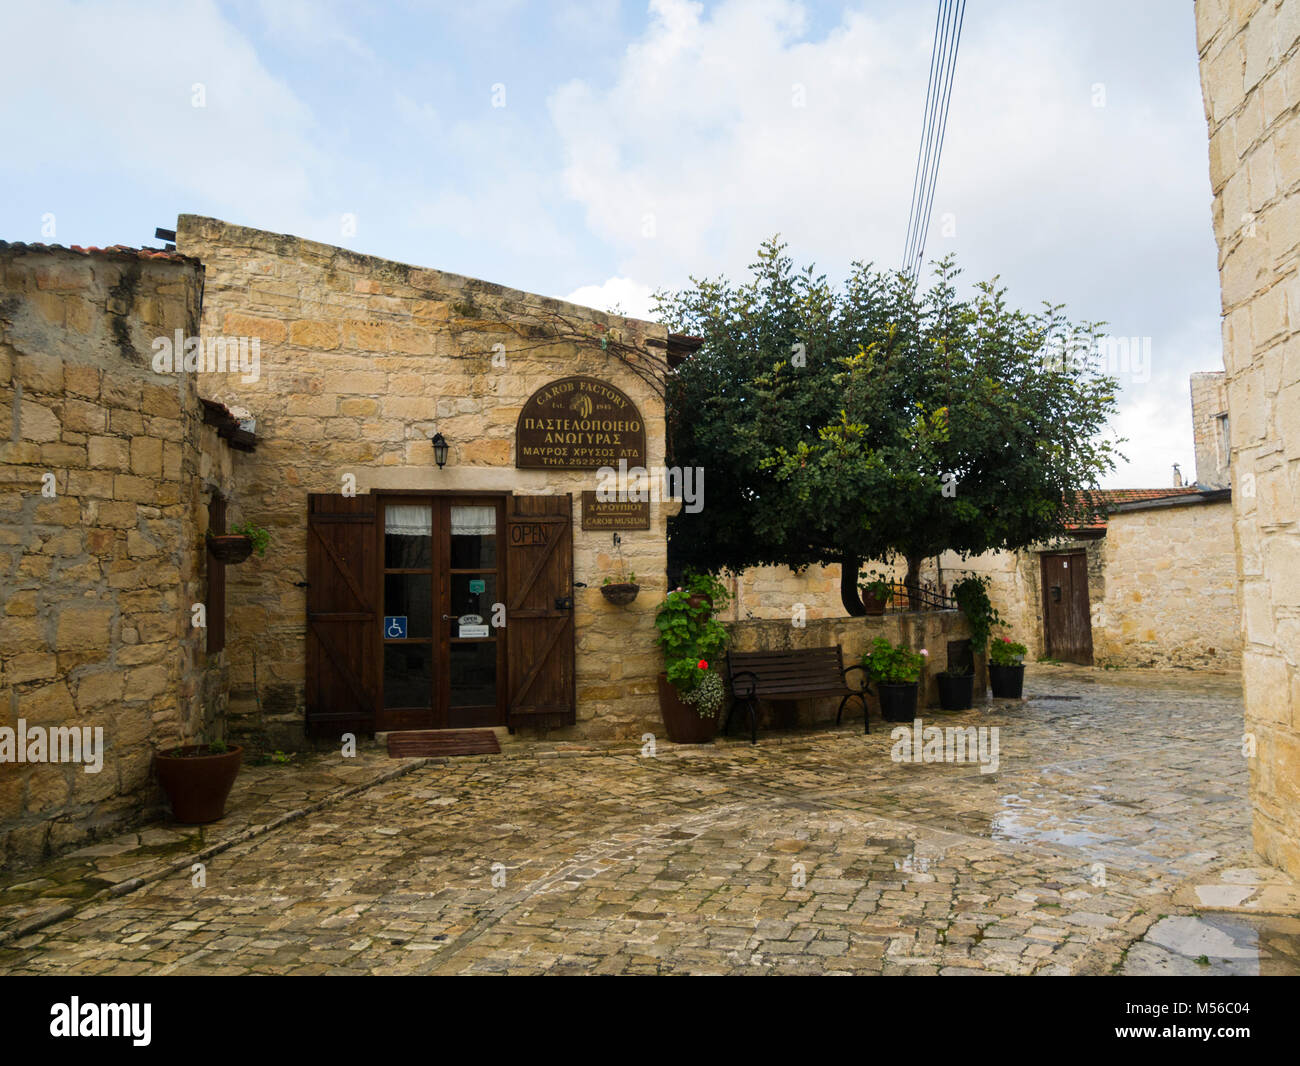 Mavros Marylebone Johannisbrot- Museum in Anogyra Zypern ein Dorf mit Charme von johannisbrot Obstgärten umgeben eine lange Tradition in der Herstellung von gesunden Johannisbrot Stockfoto